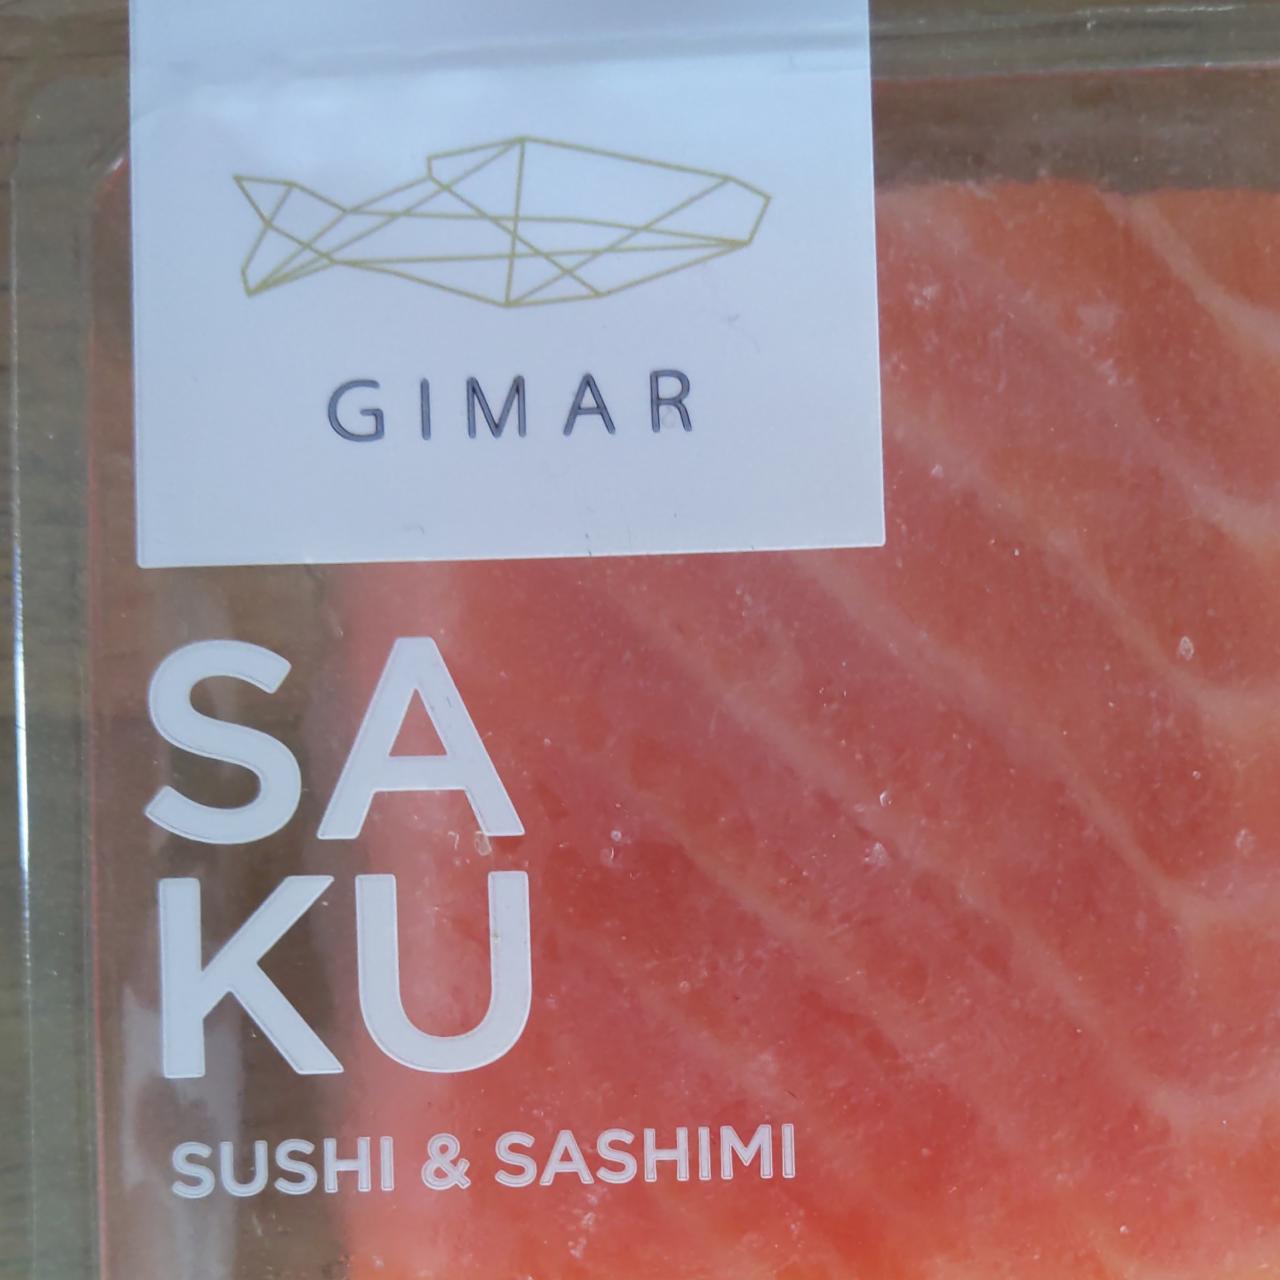 Fotografie - Saku sushi & sashimi Gimar